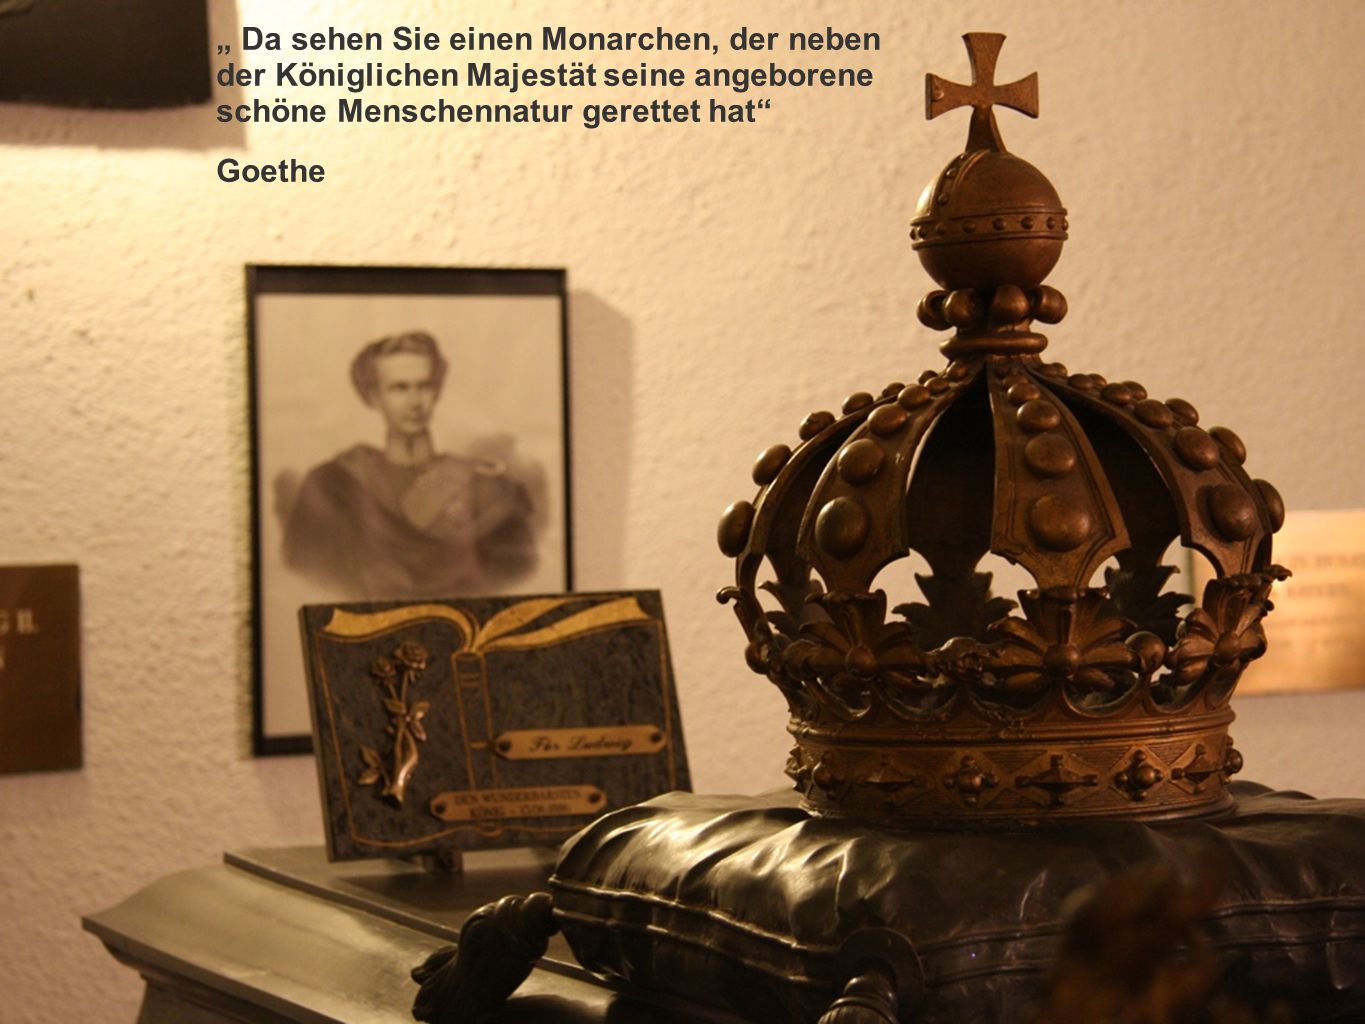 Da sehen Sie einen Monarchen, der neben der Königlichen Majestät seine angeborene schöne Menschennatur gerettet hat Goethe